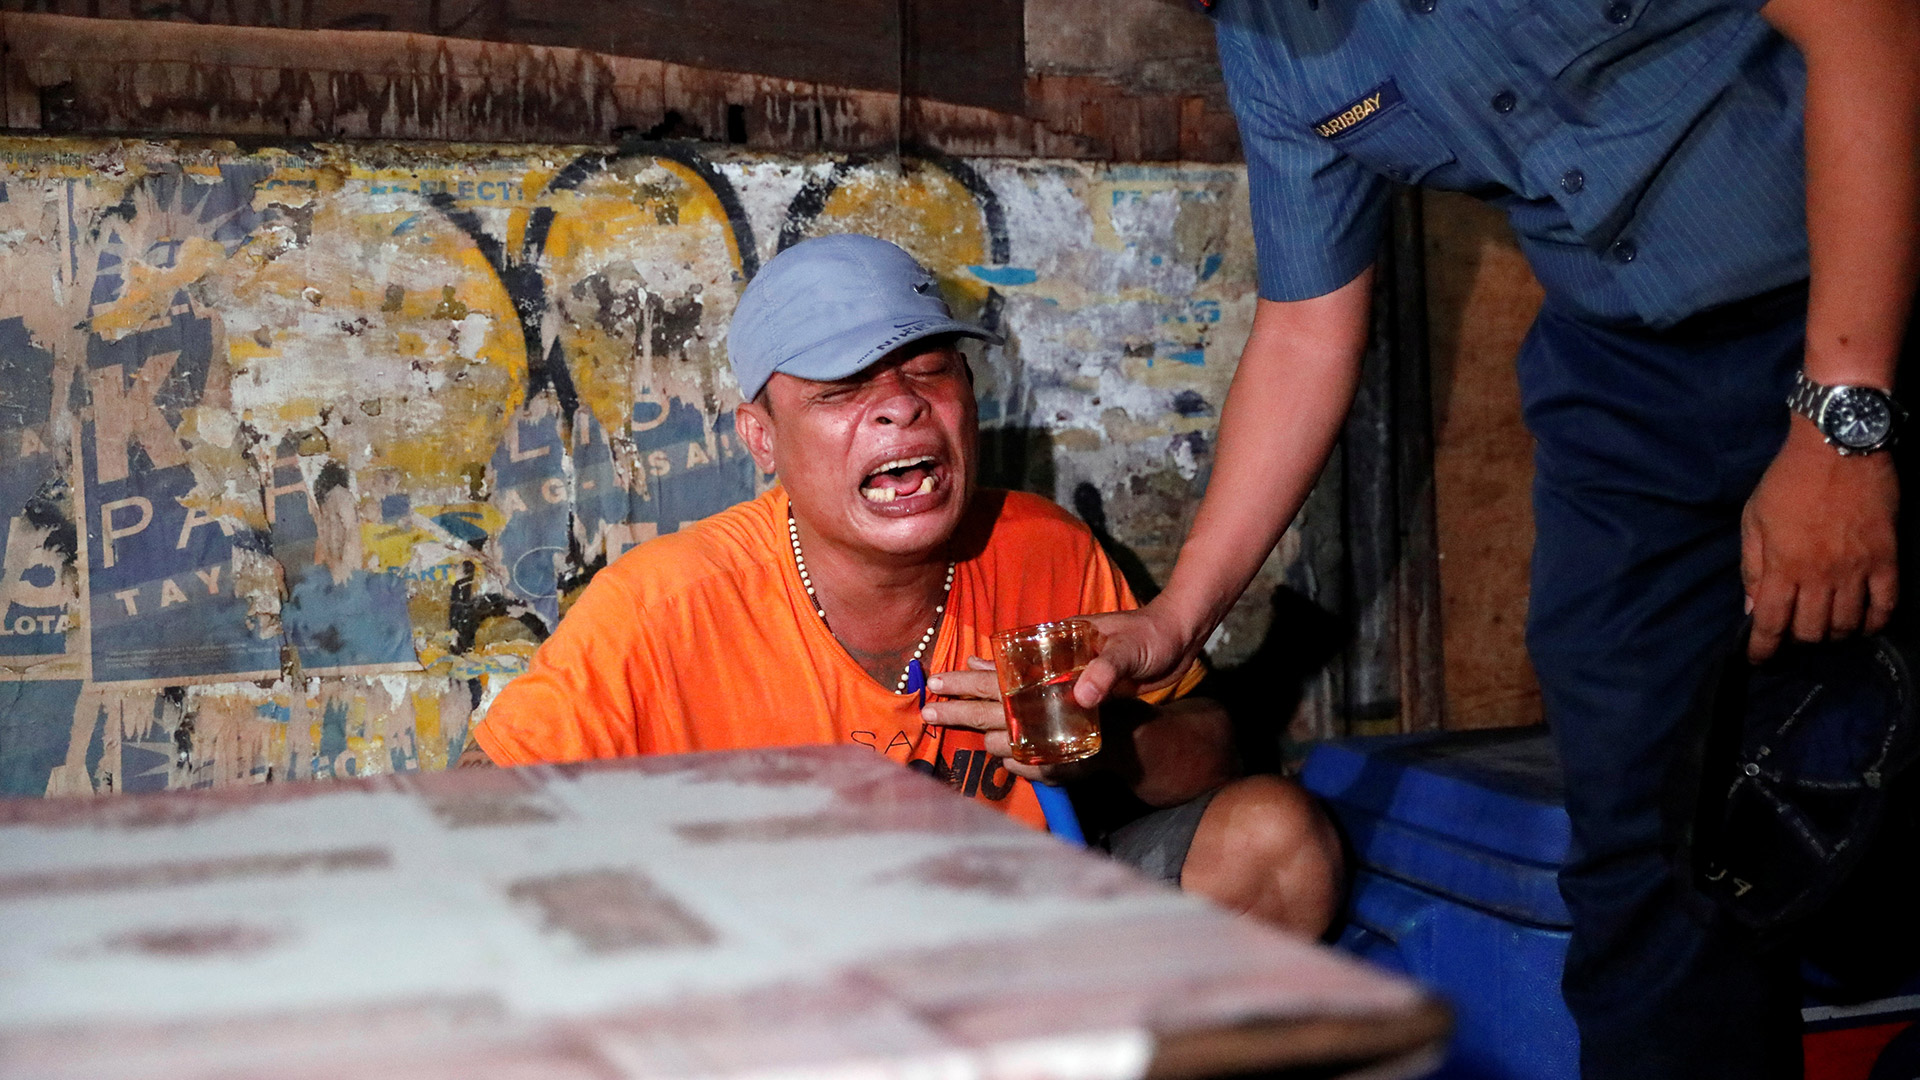 Continúa la masacre en Filipinas, 26 muertos más en 24 horas